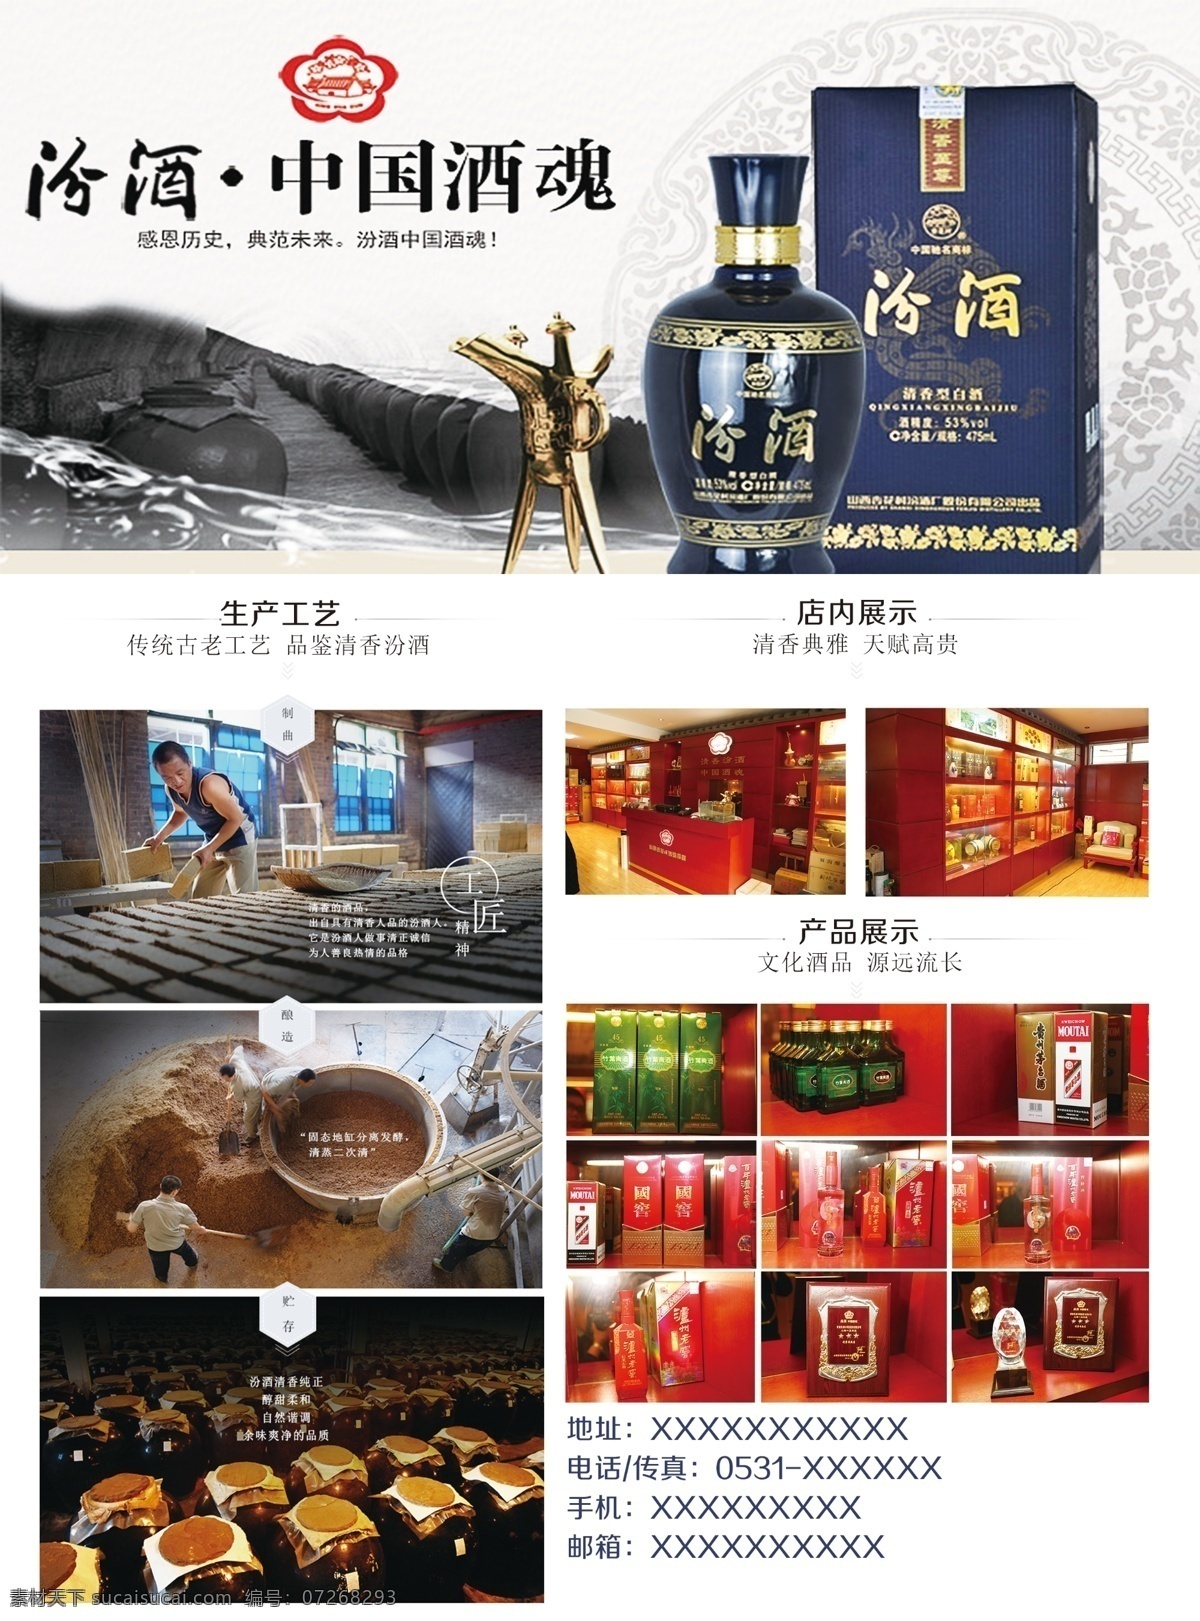 白酒 汾酒 彩页 海报 单页 封面 酒瓶 白酒制作工艺 产品展示 白酒图片